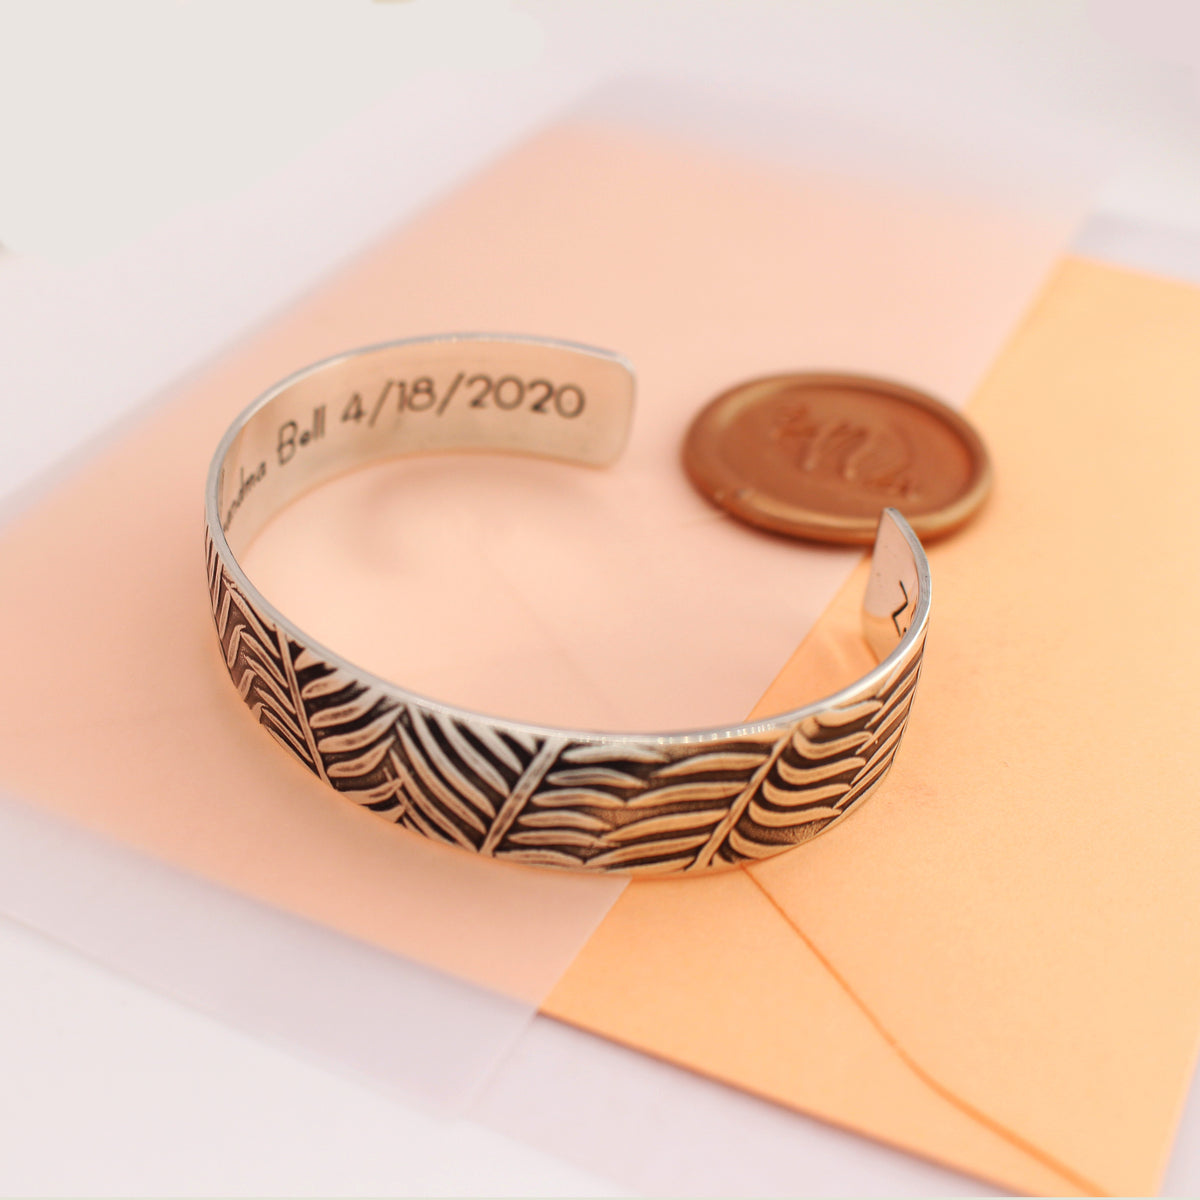 Fern Pattern Personalized Cuff Bracelet - 1/2&quot; - Love It Personalized